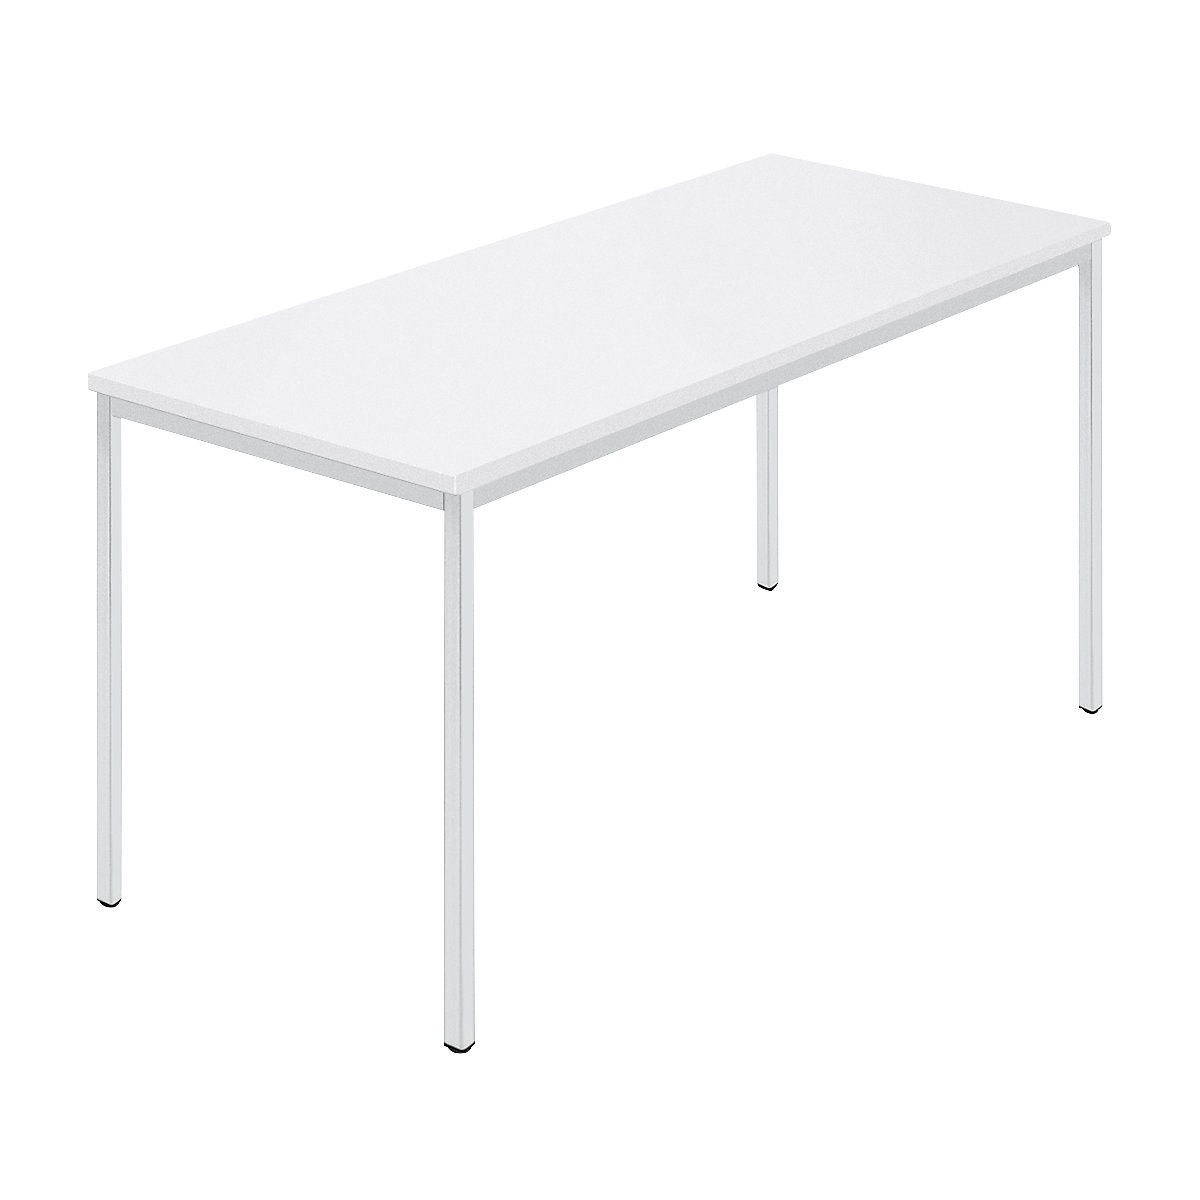 Rechthoekige tafel, vierkante buis met coating, b x d = 1400 x 700 mm, wit / grijs-7